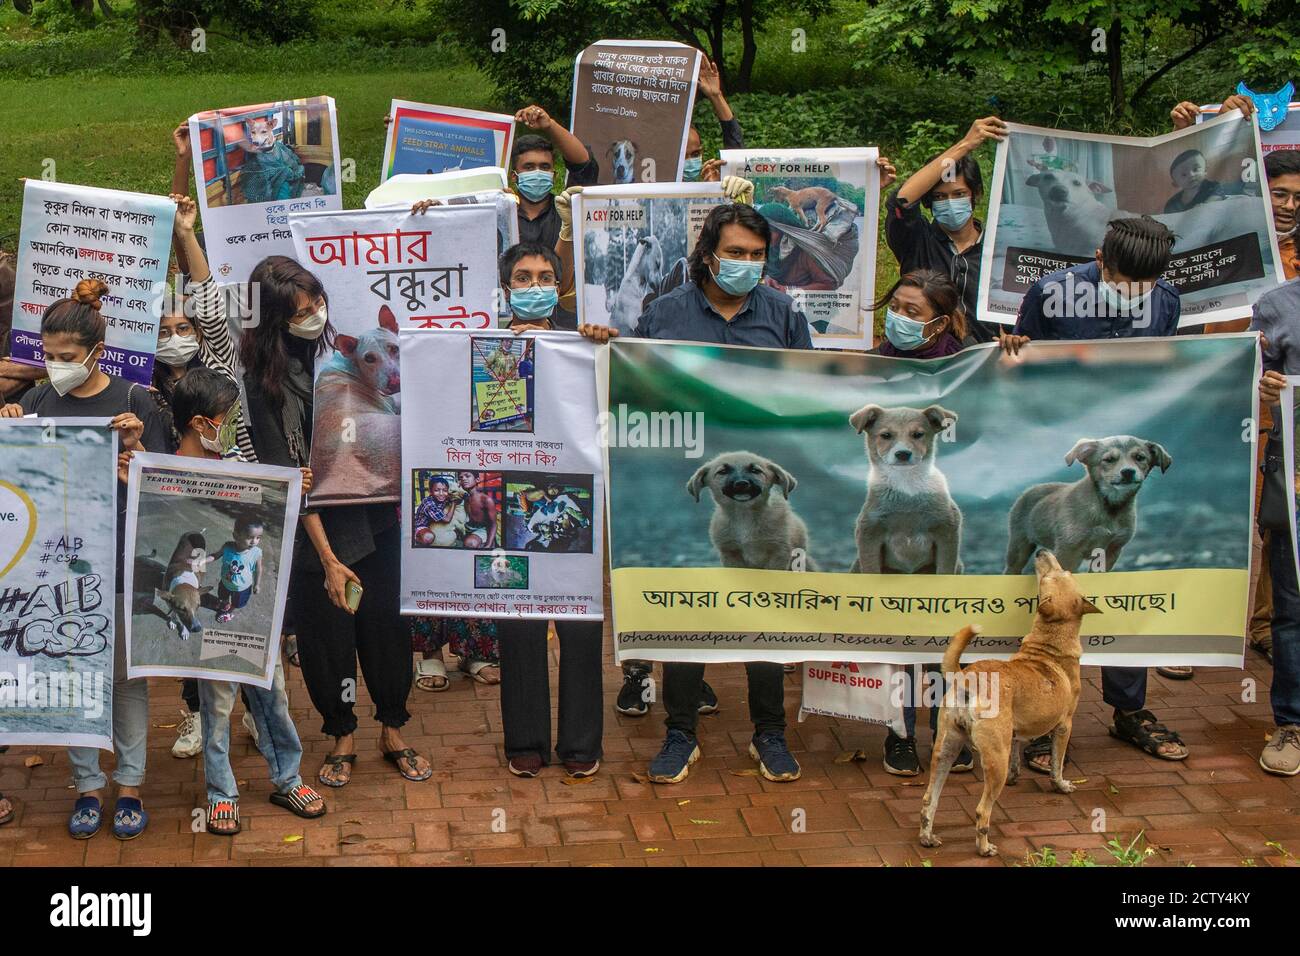 Los manifestantes sostenían pancartas y pancartas durante la  manifestación.los amantes de los animales, con pancartas, festoons,  pancartas y carteles, exigen que se detenga inmediatamente la reubicación  ilegal de perros callejeros de Dhaka